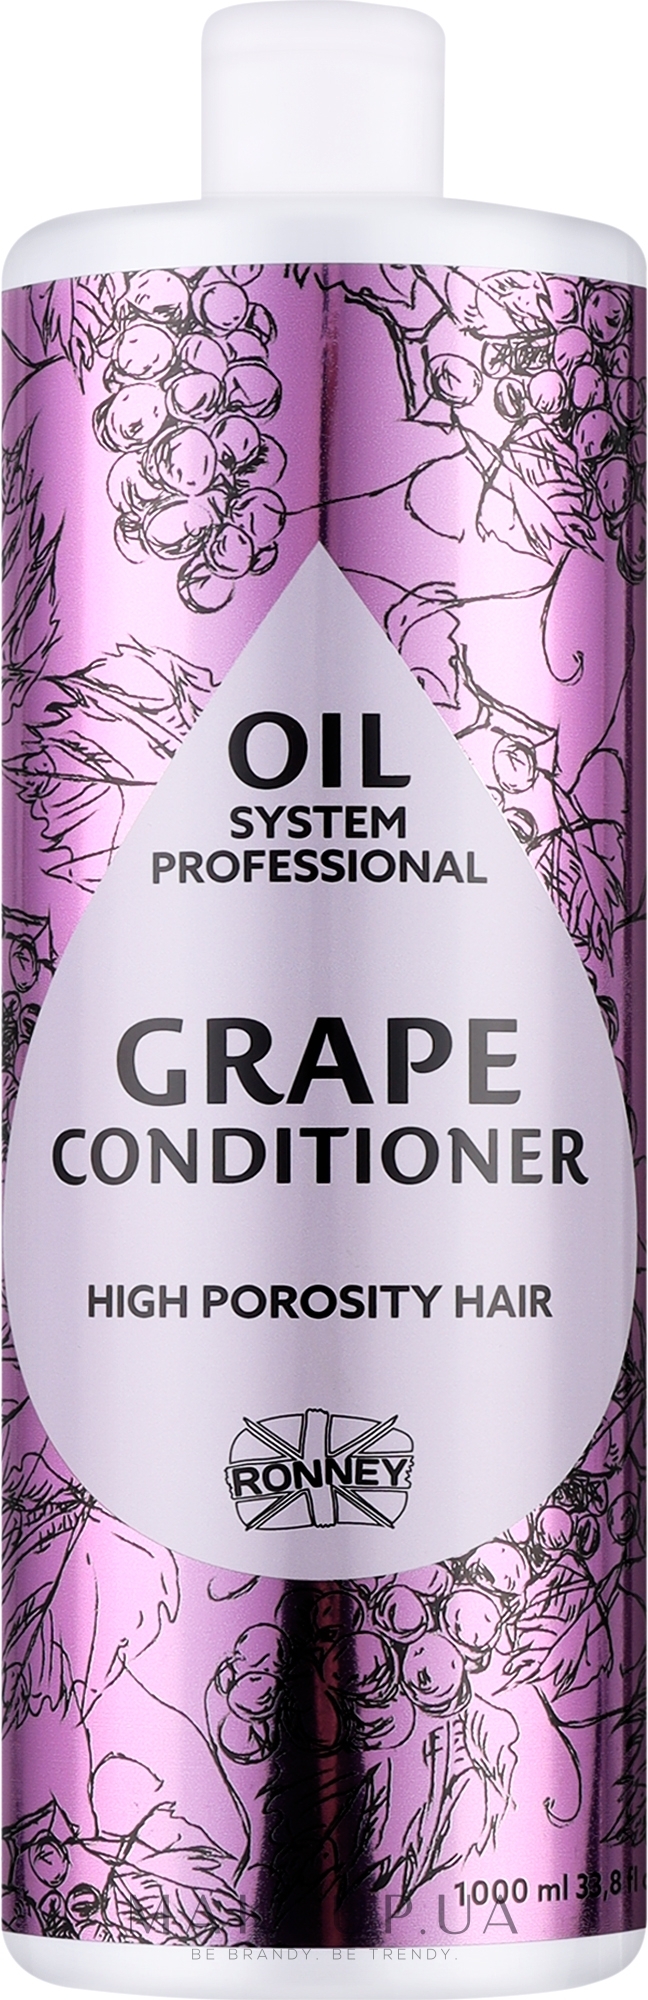 Кондиционер для высокопористых волос с маслом винограда - Ronney Professional Oil System High Porosity Hair Grape Conditioner — фото 1000ml